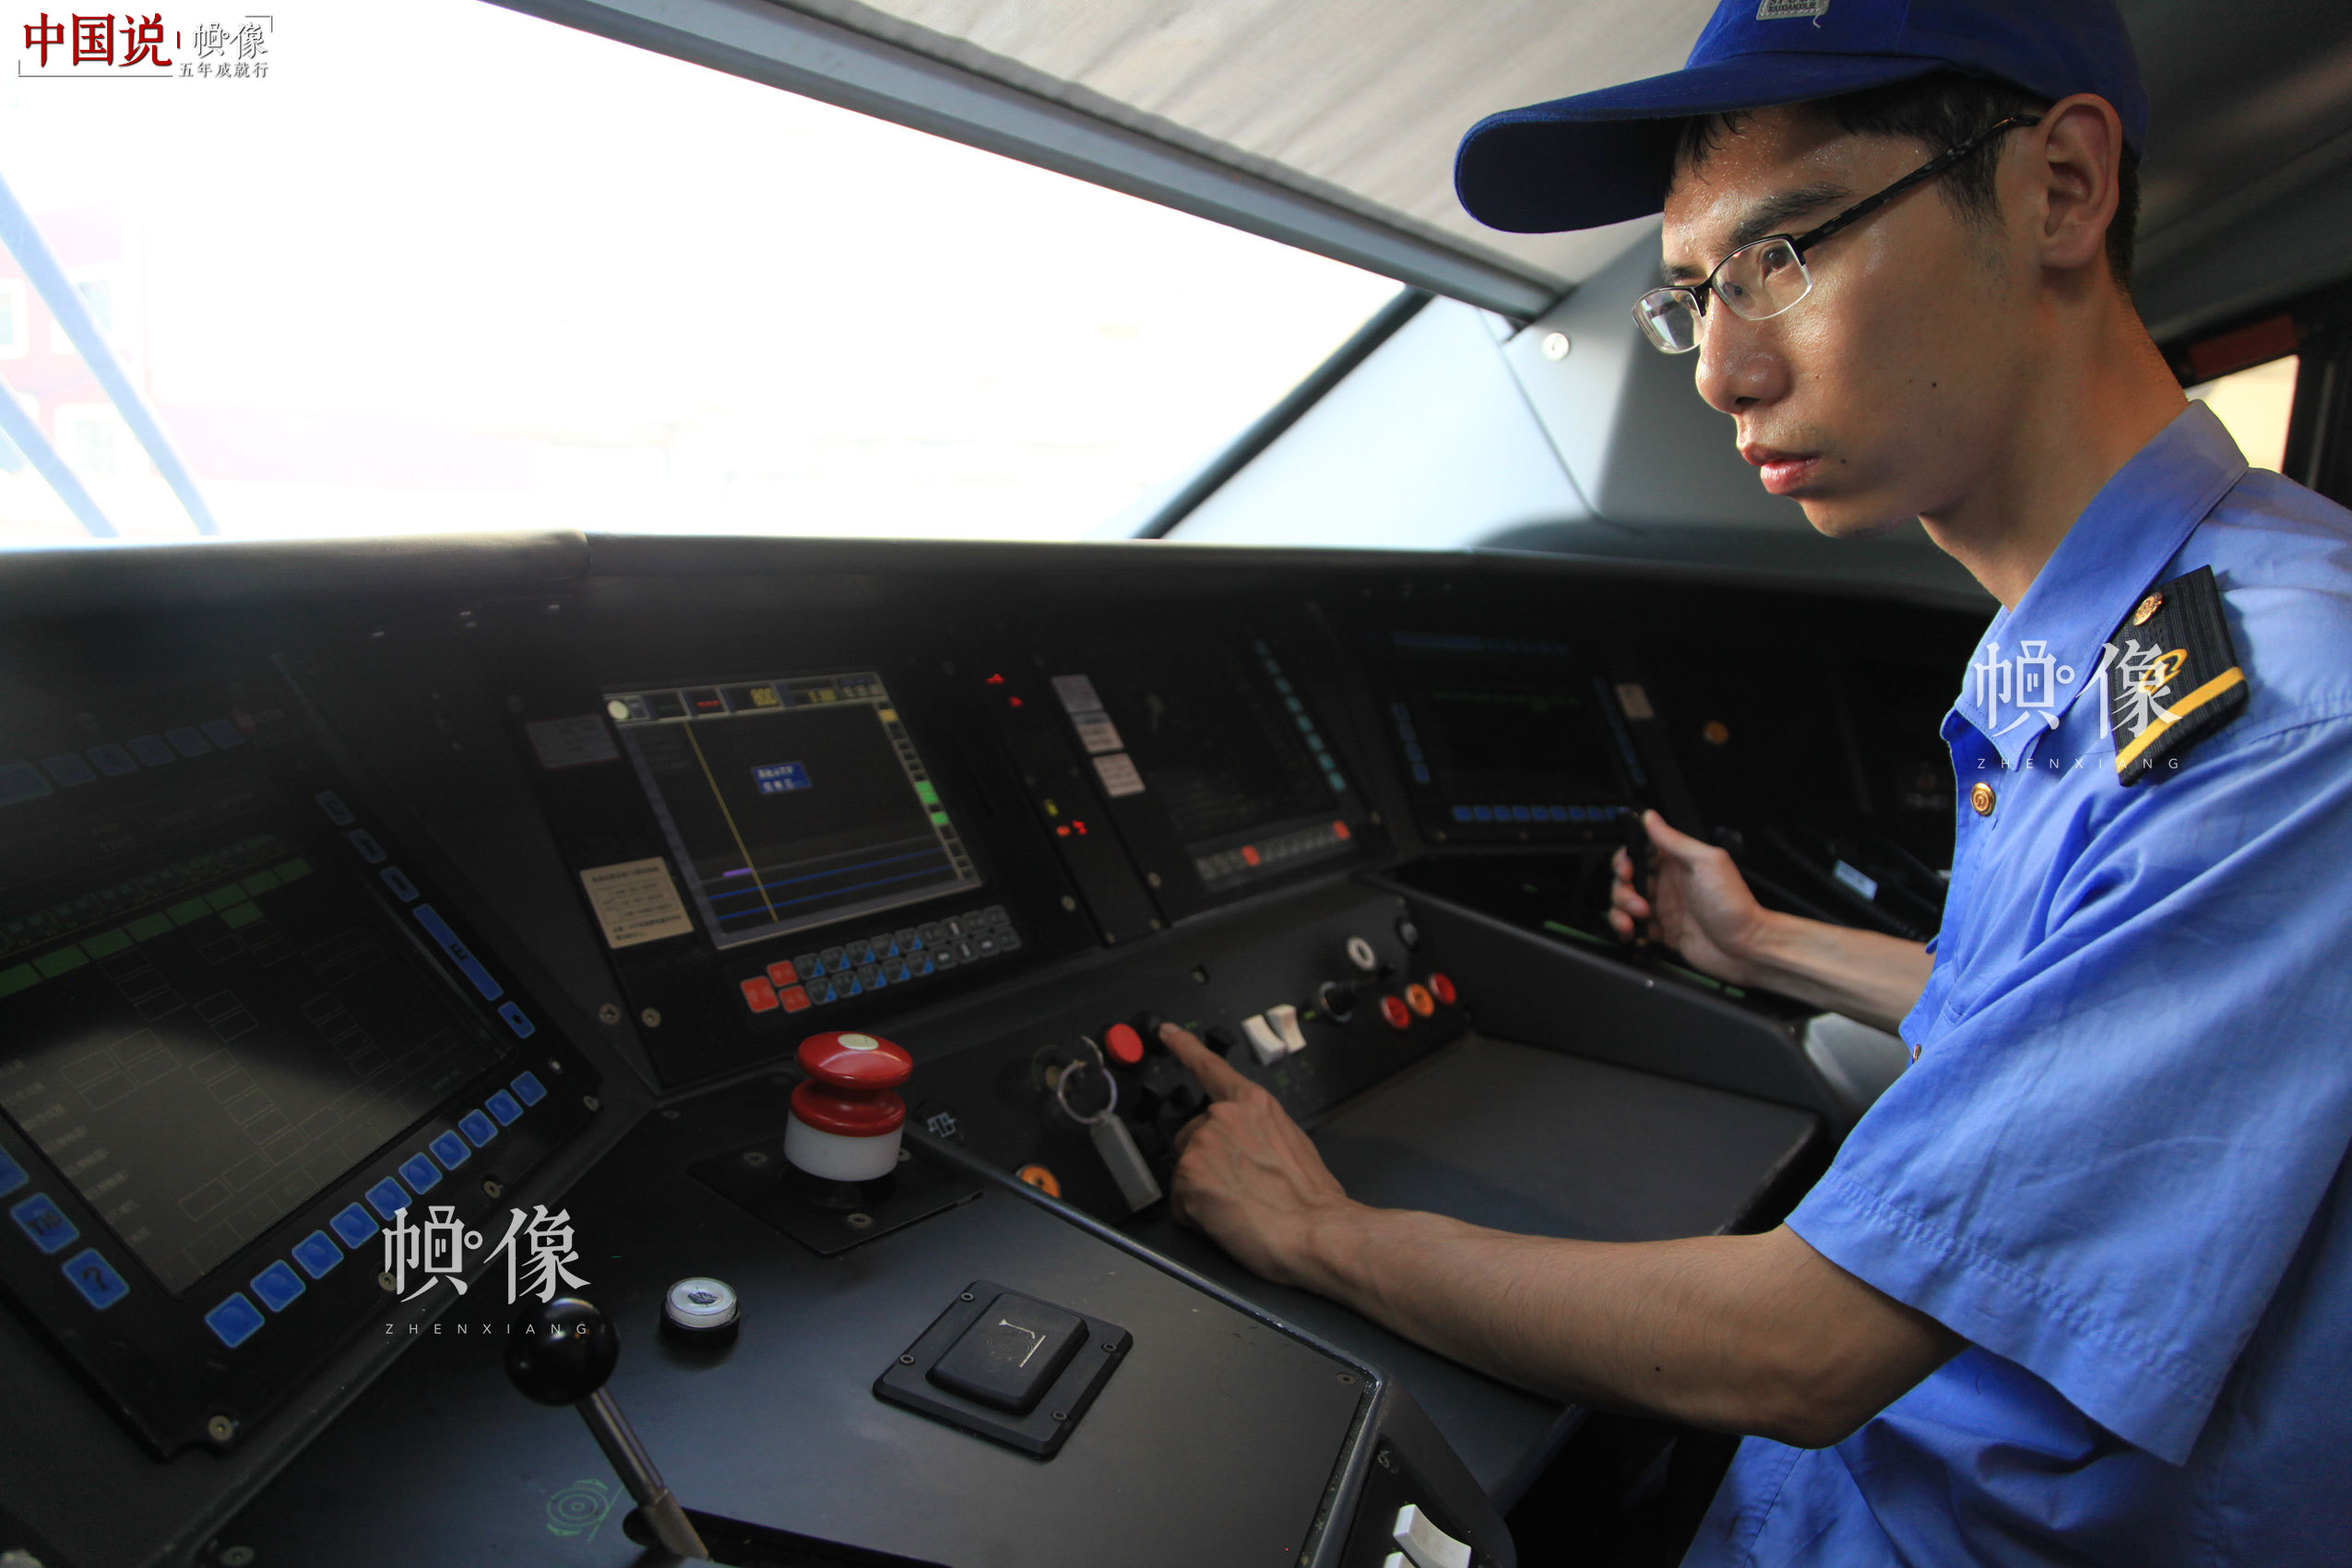 作业人员张朝舜对驾驶室操作系统进行检测。北京动车段 李博 供图